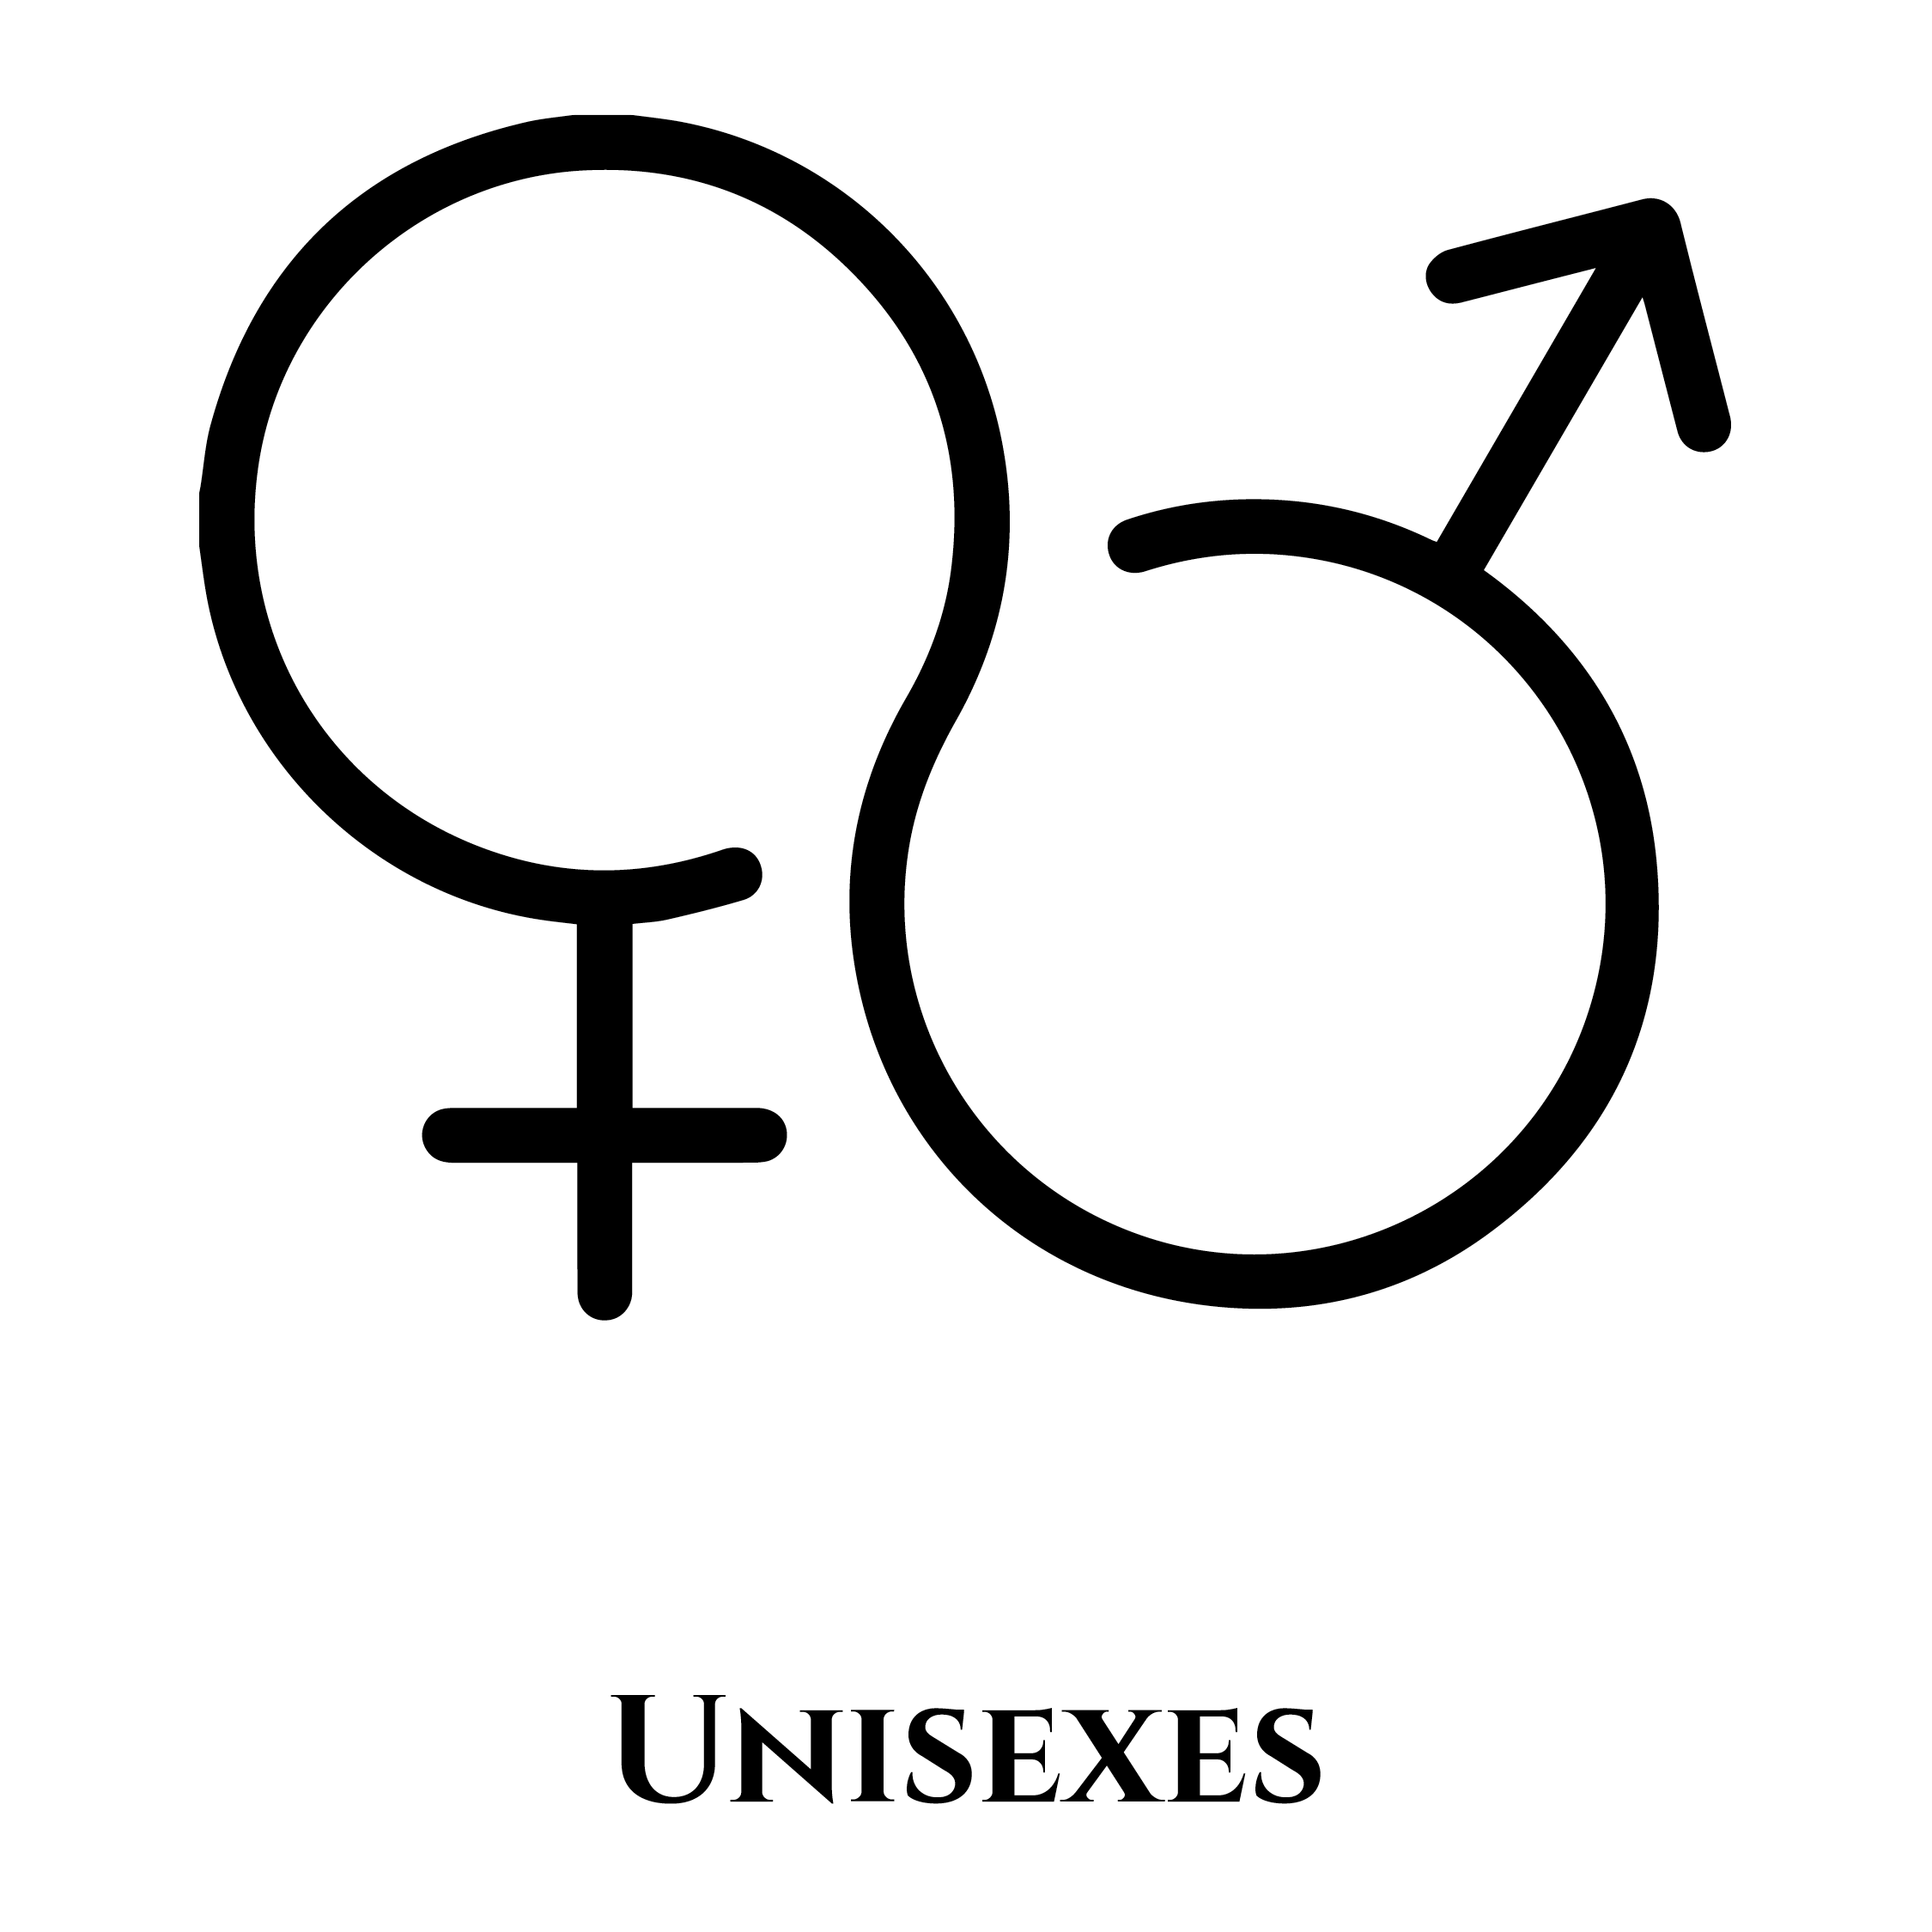 Icônes masculin et féminin entrelacées pour symboliser le fait que les produits OPHÉO soient unisexes.